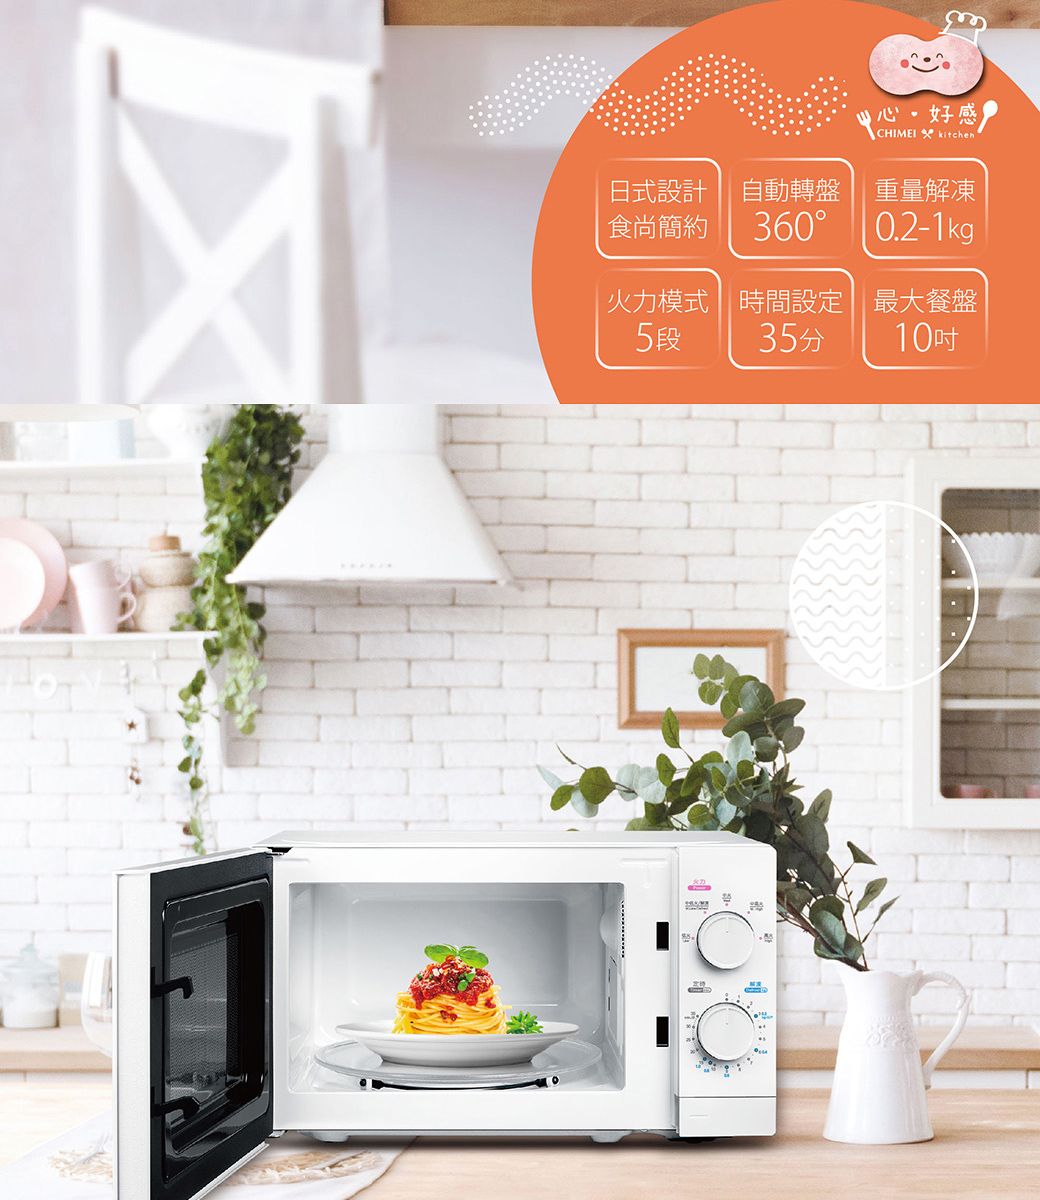 好感CHIMEI kitchen日式設計自動轉盤 重量解凍食尚簡約3600.2-1kg火力模式時間設定最大餐盤5段35分10吋